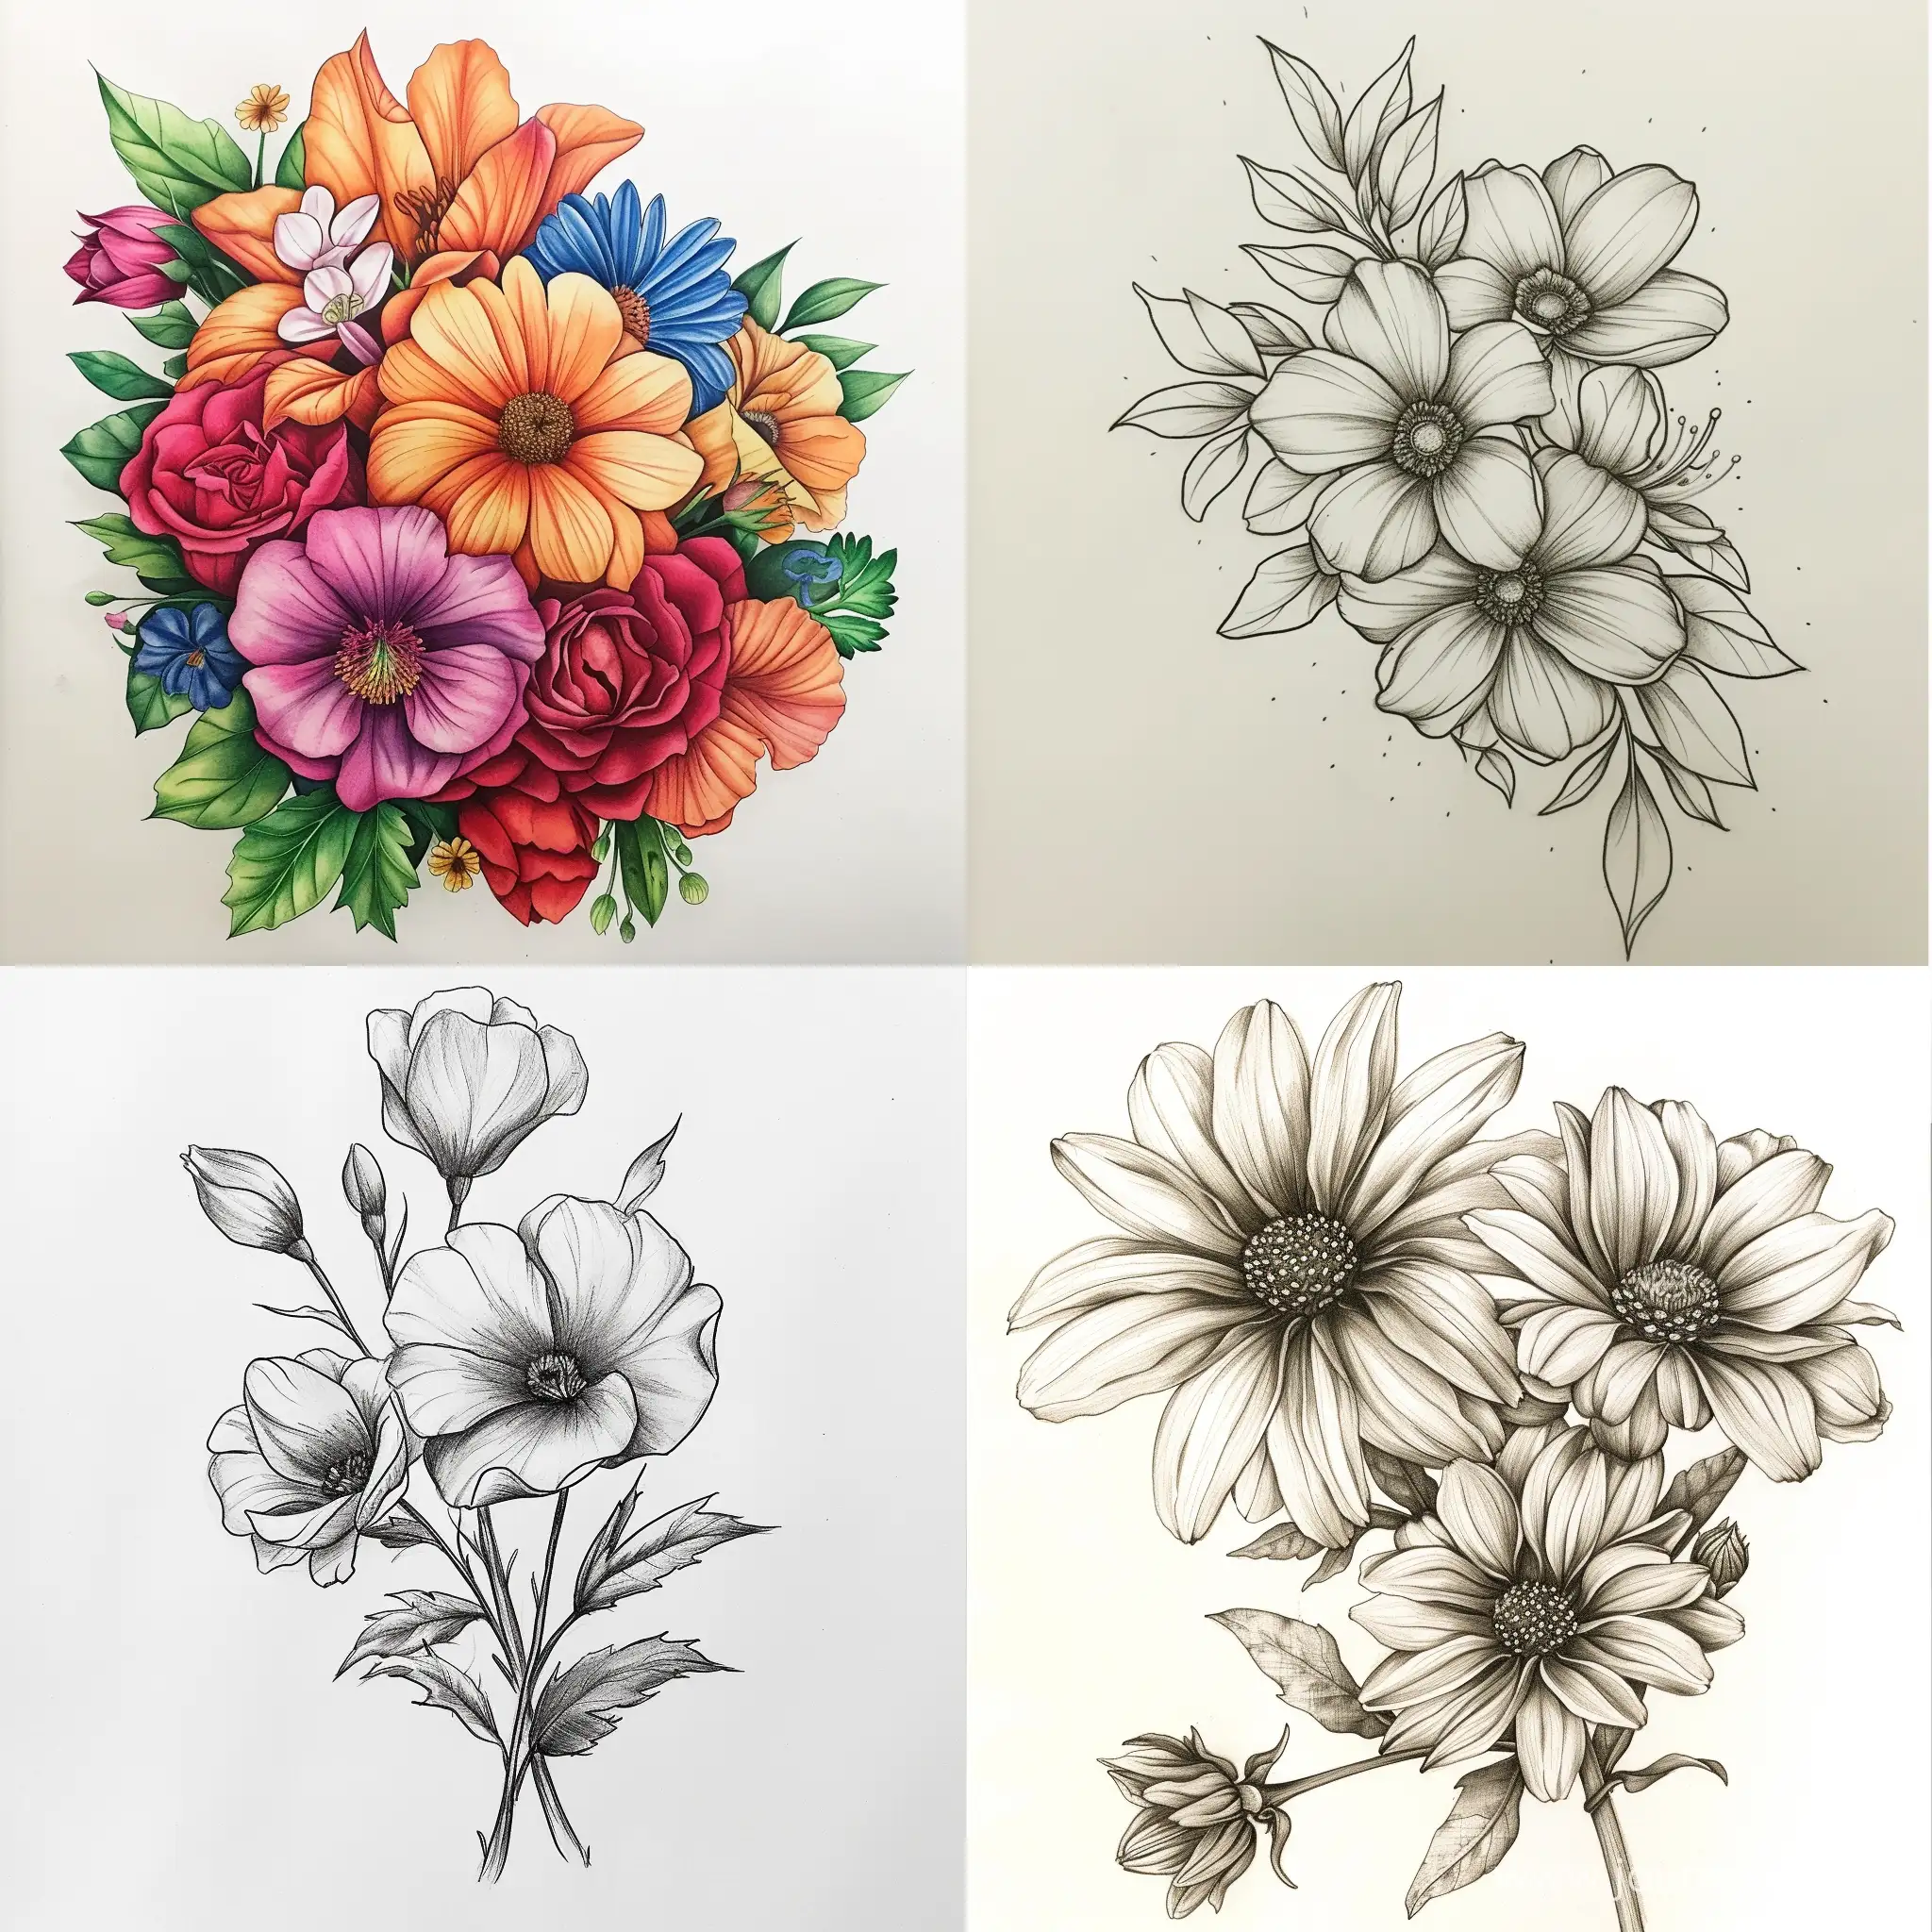 Vibrant-Bouquet-of-6-Flowers-Square-Aspect-Ratio-11